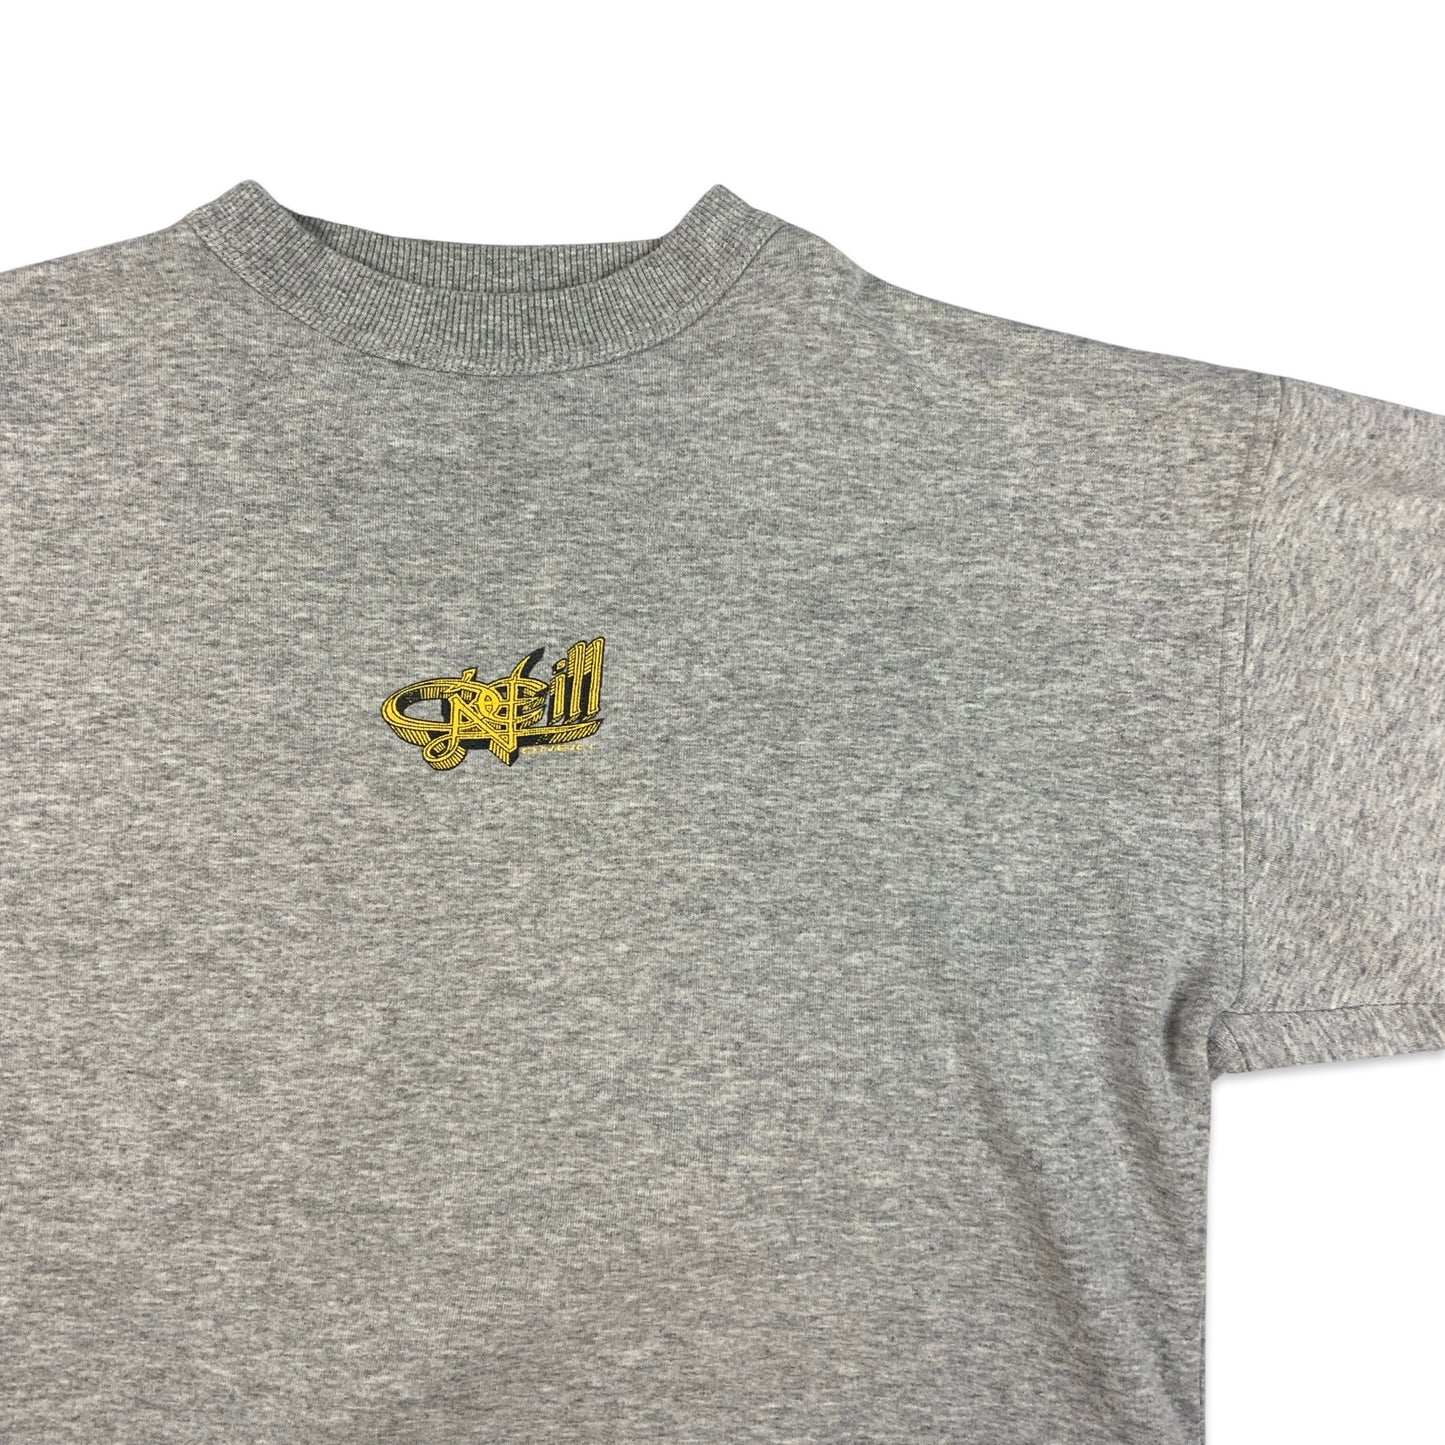 90s Y2K Vintage Grey O’Neill Sweatshirt Yellow Graphic L XL 2XL